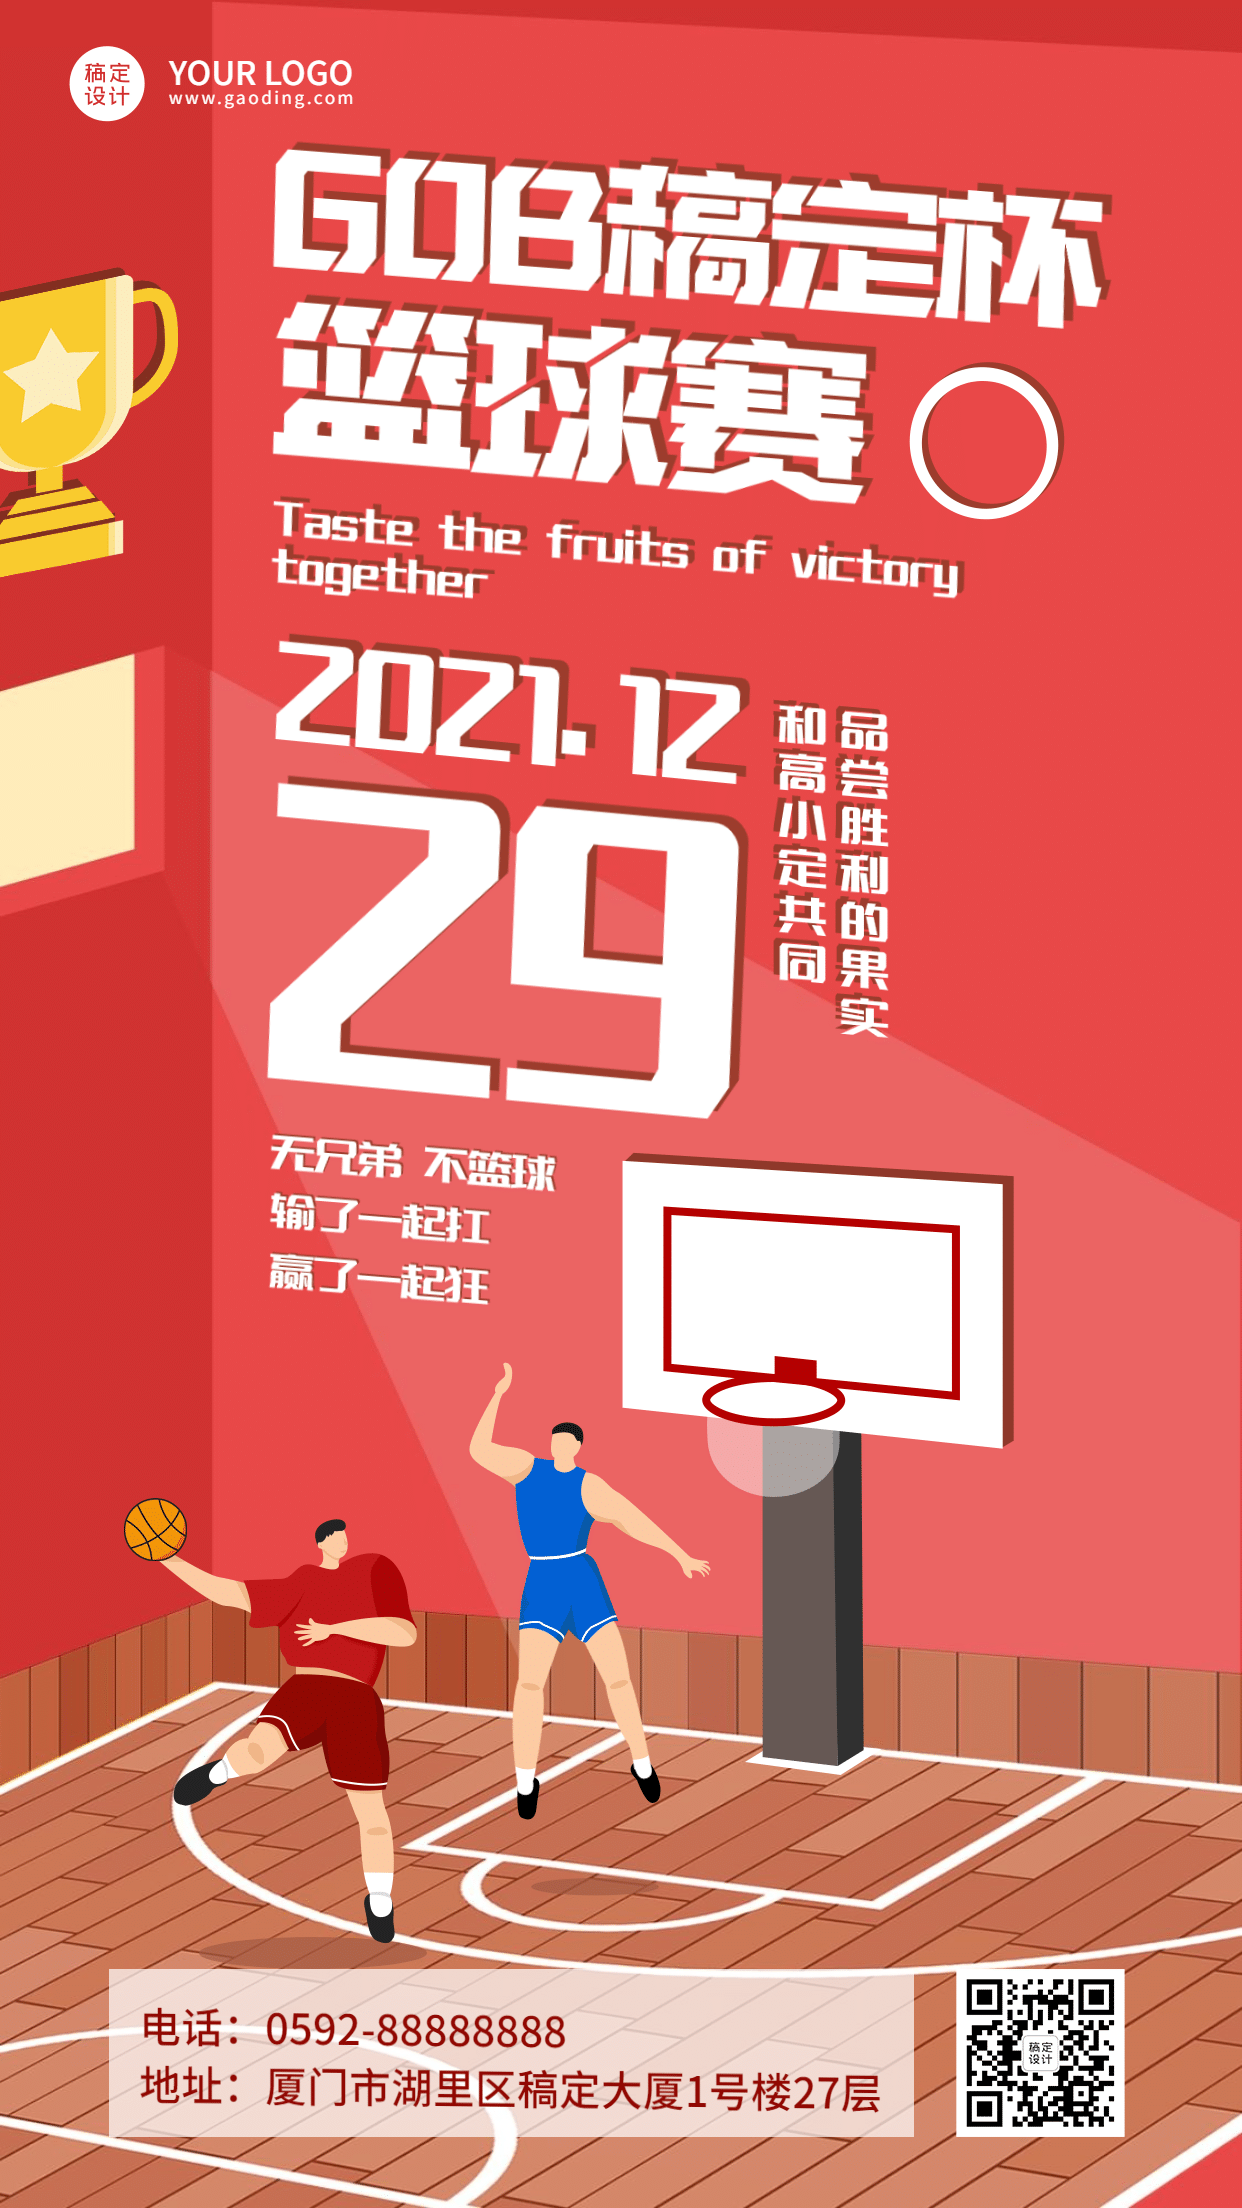 [体育活动]首届教职工篮球赛及趣味篮球比赛 完赛-竞技体育中心